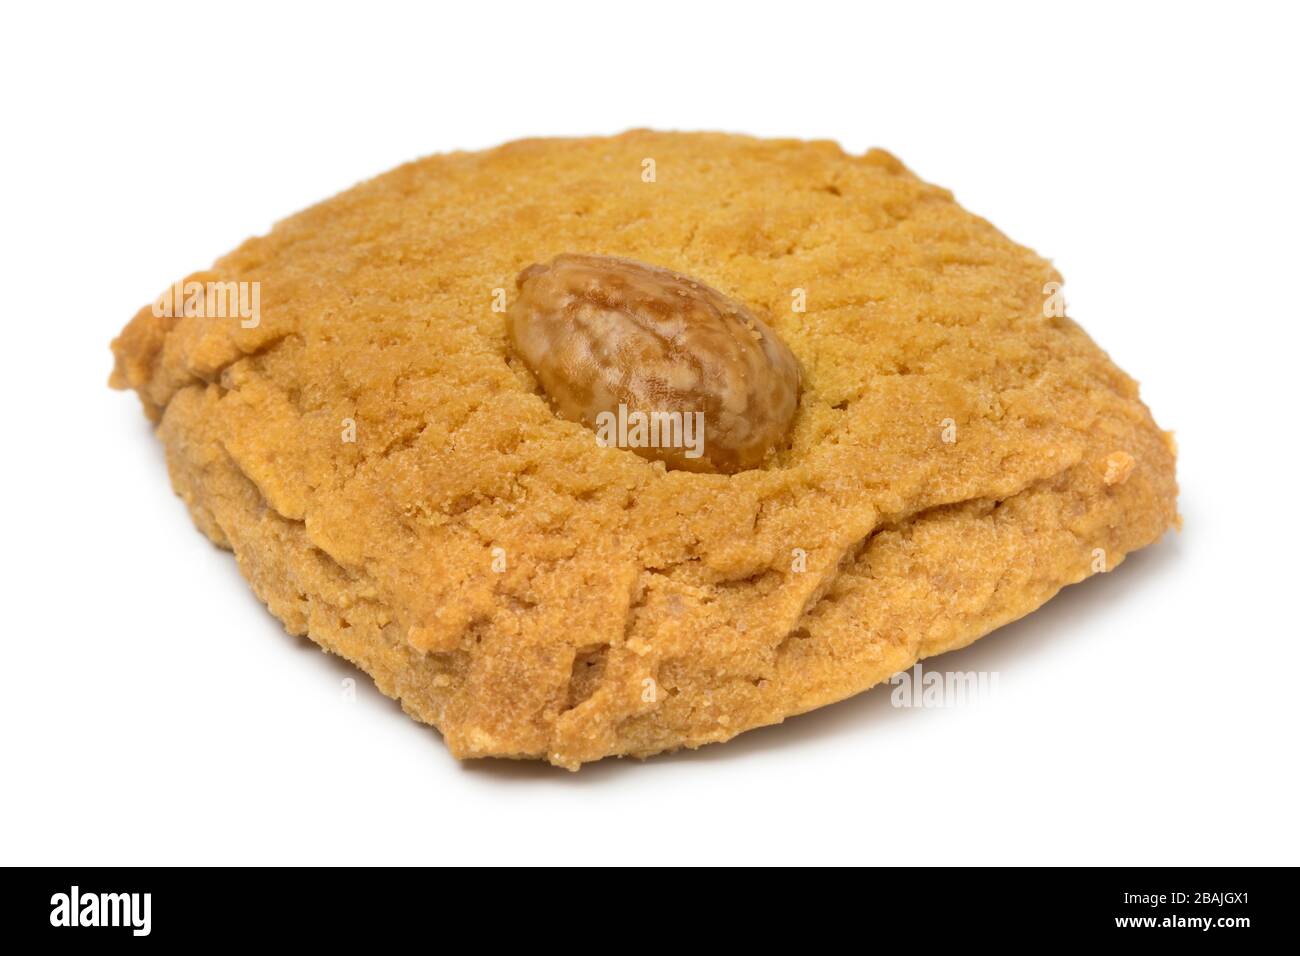 Un seul cookie de beurre néerlandais traditionnel avec une amande isolée sur fond blanc Banque D'Images